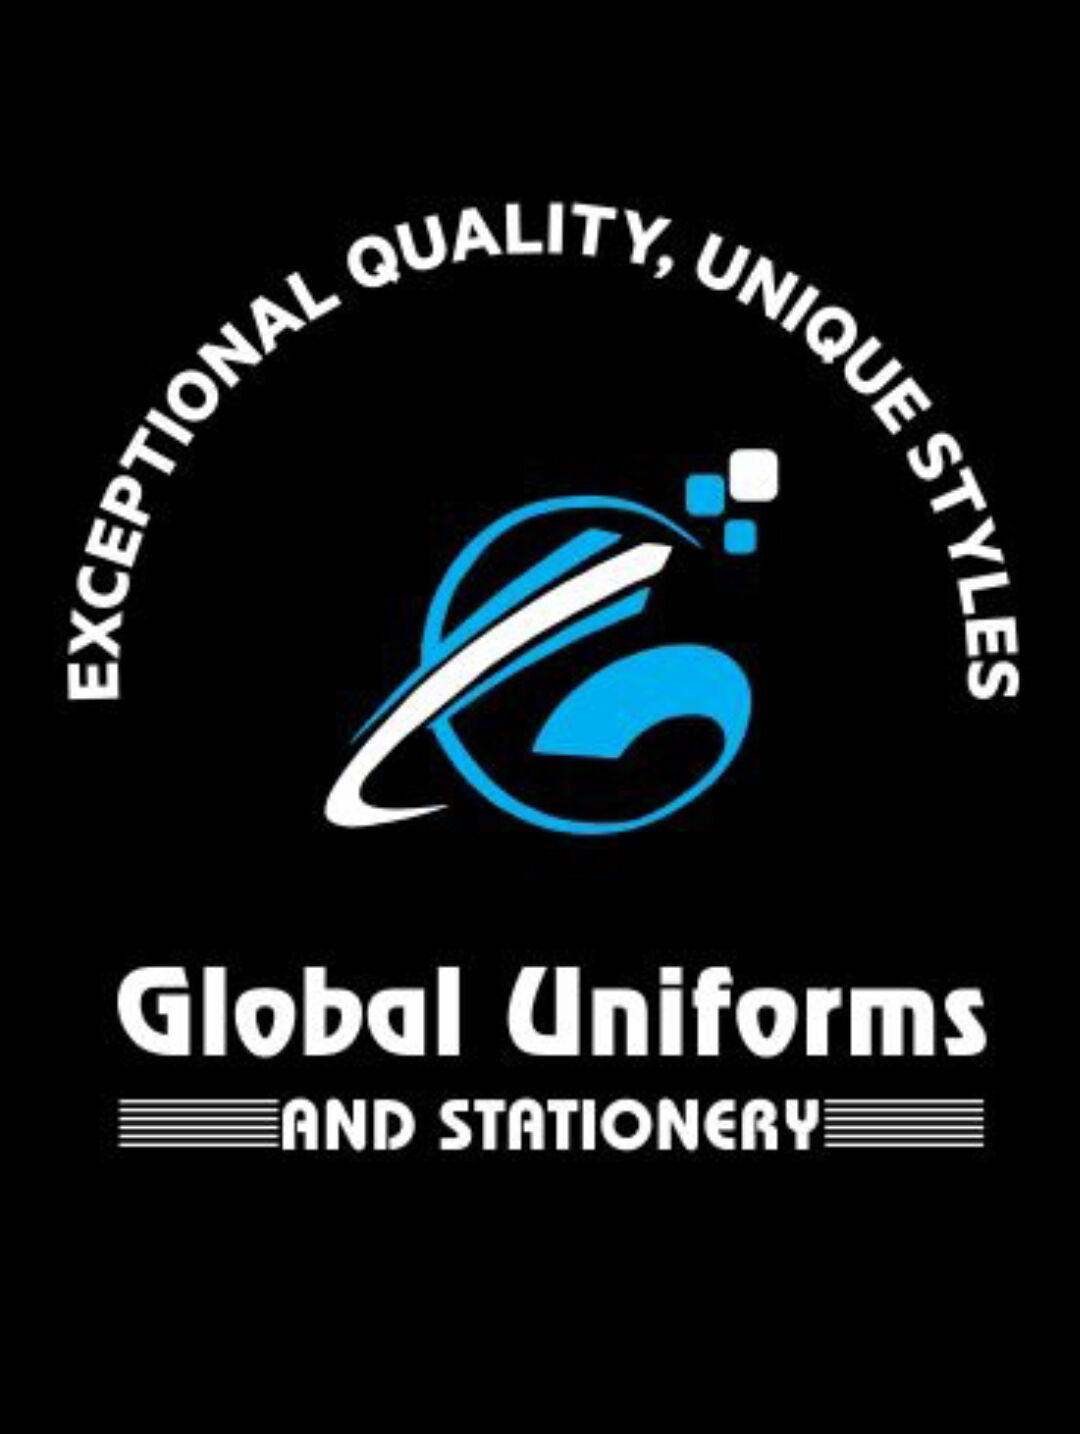 Global Uniform